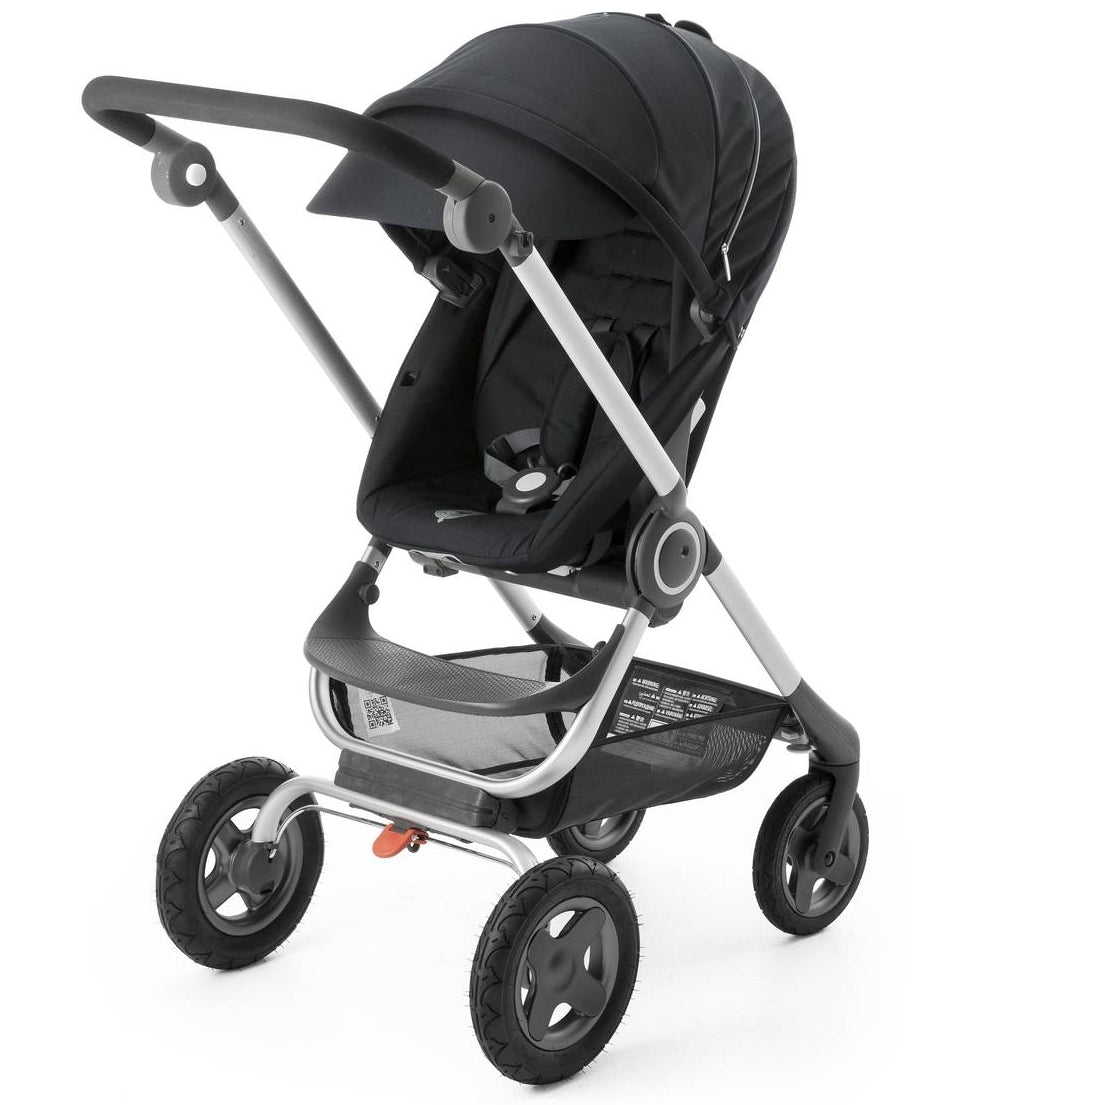 Stokke Stroller Complete - Black | Baby